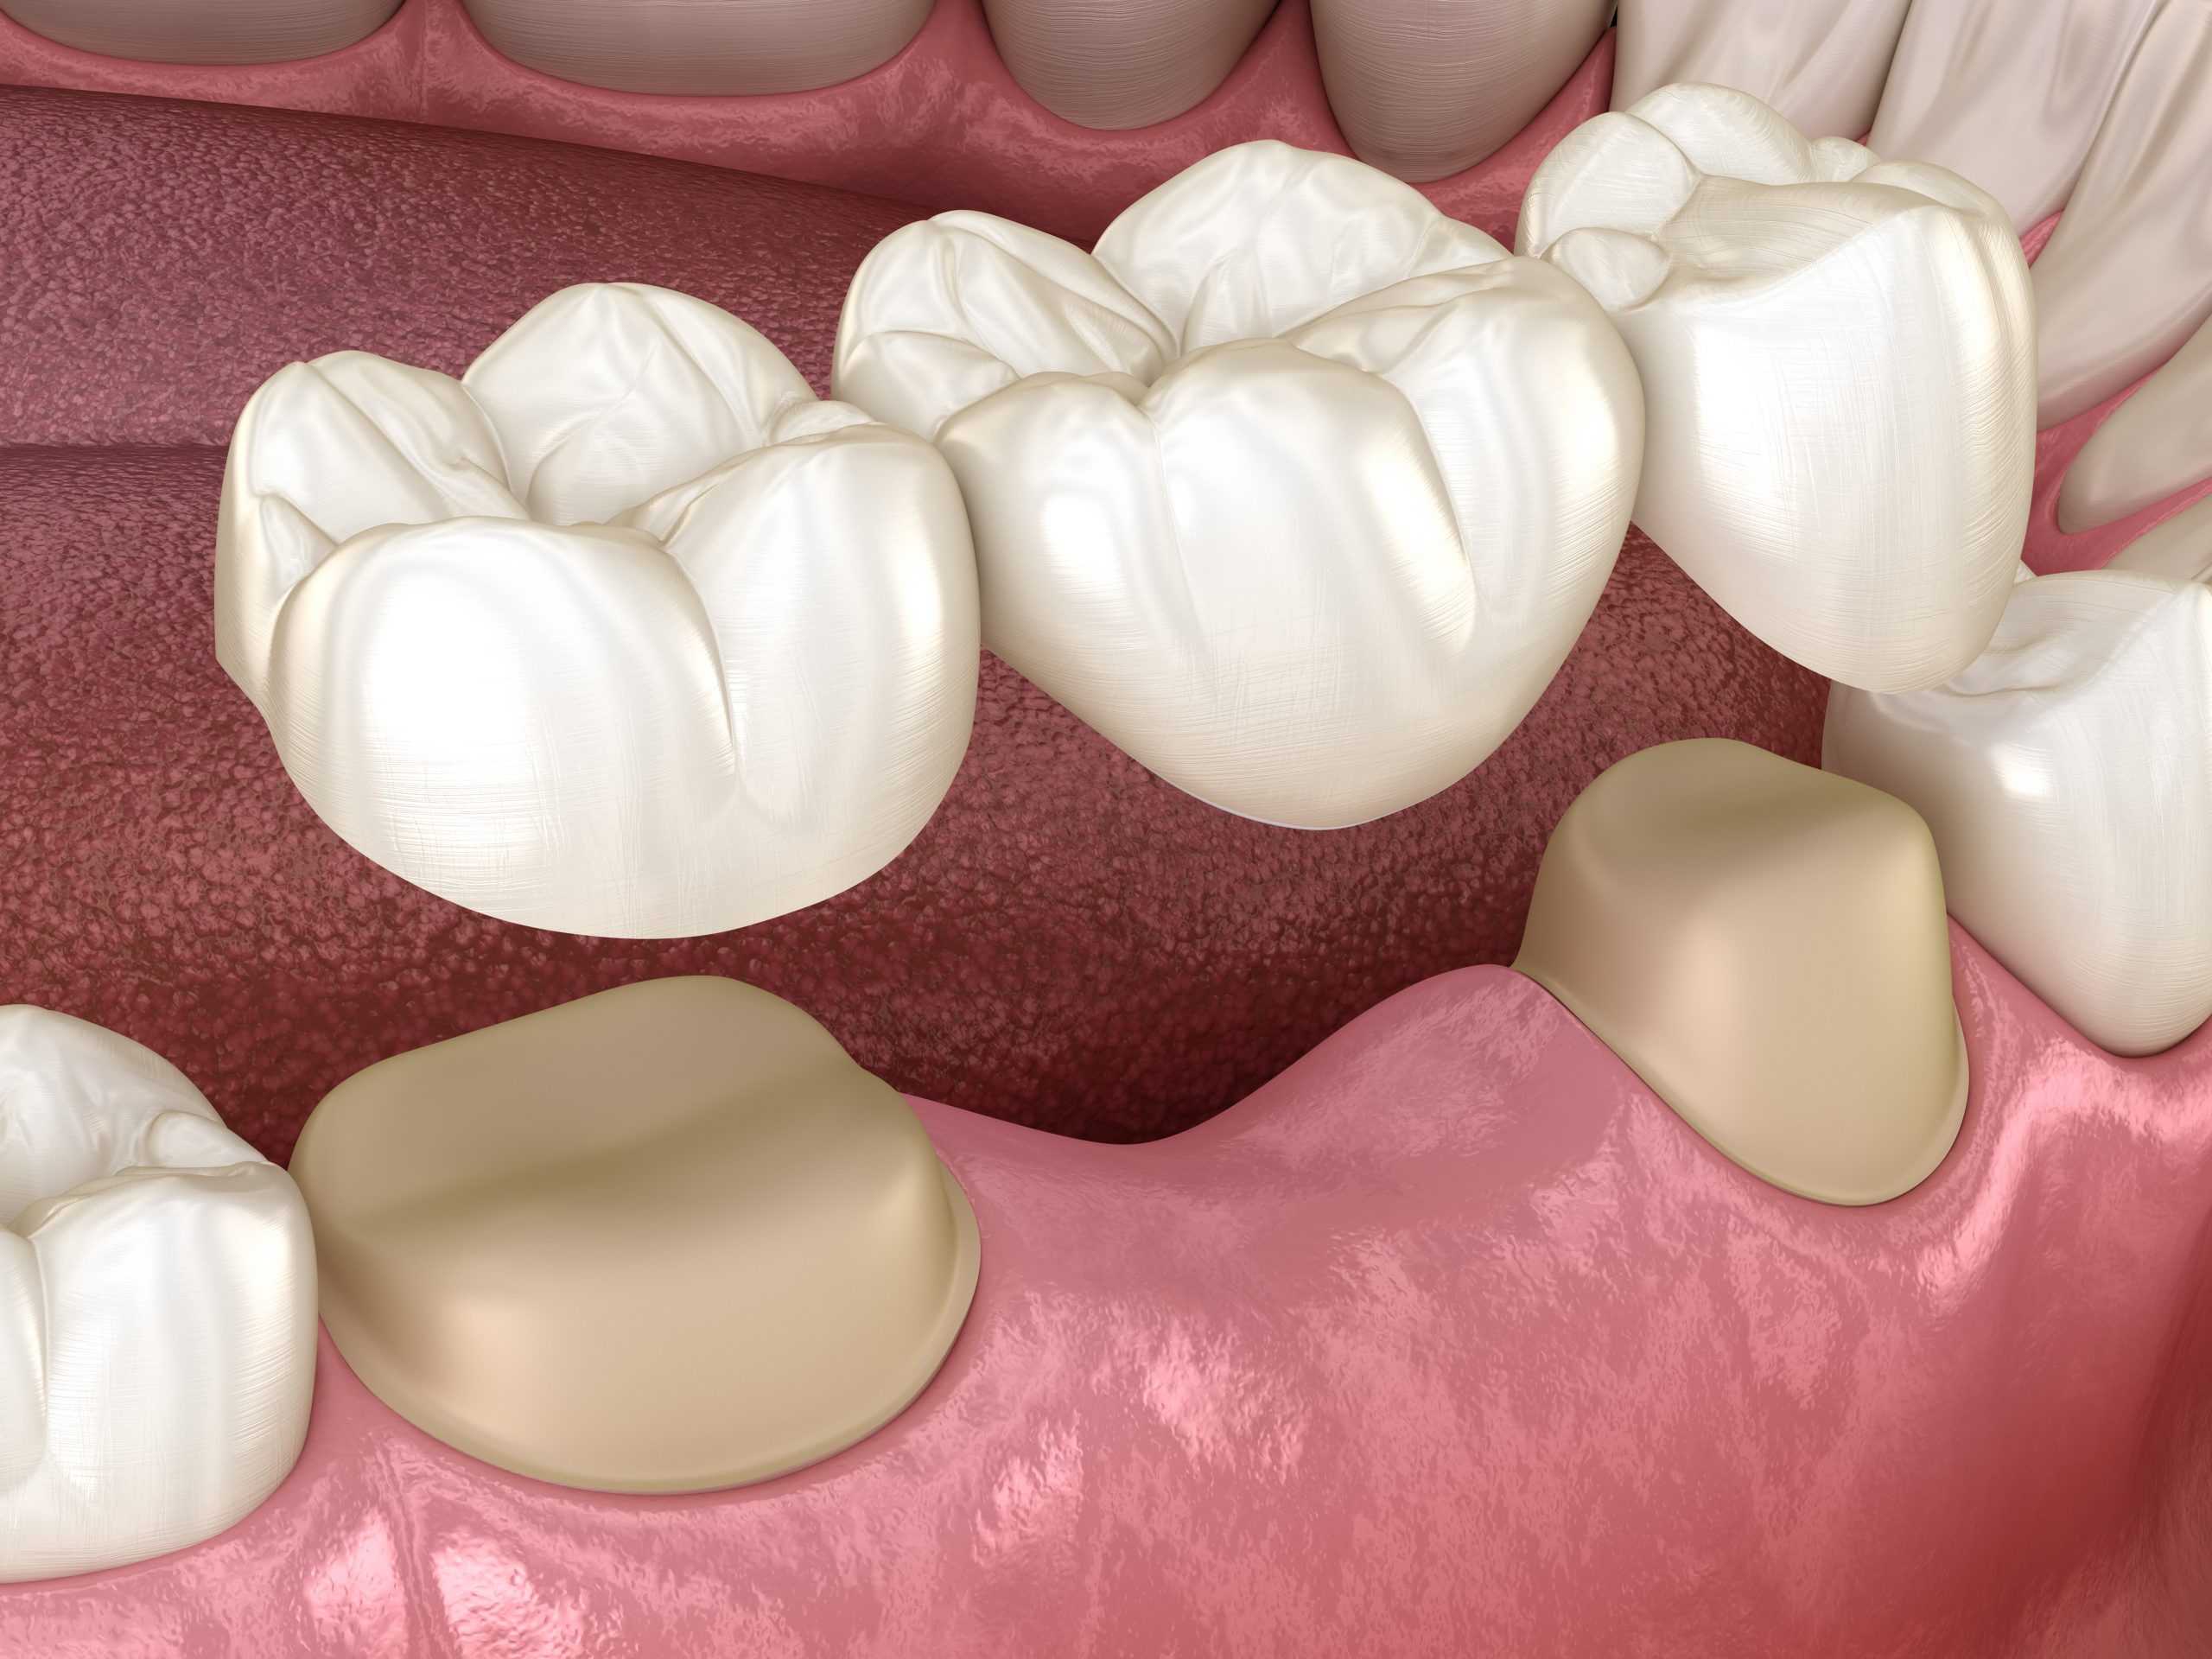 5 Common Questions about Dental Bridges